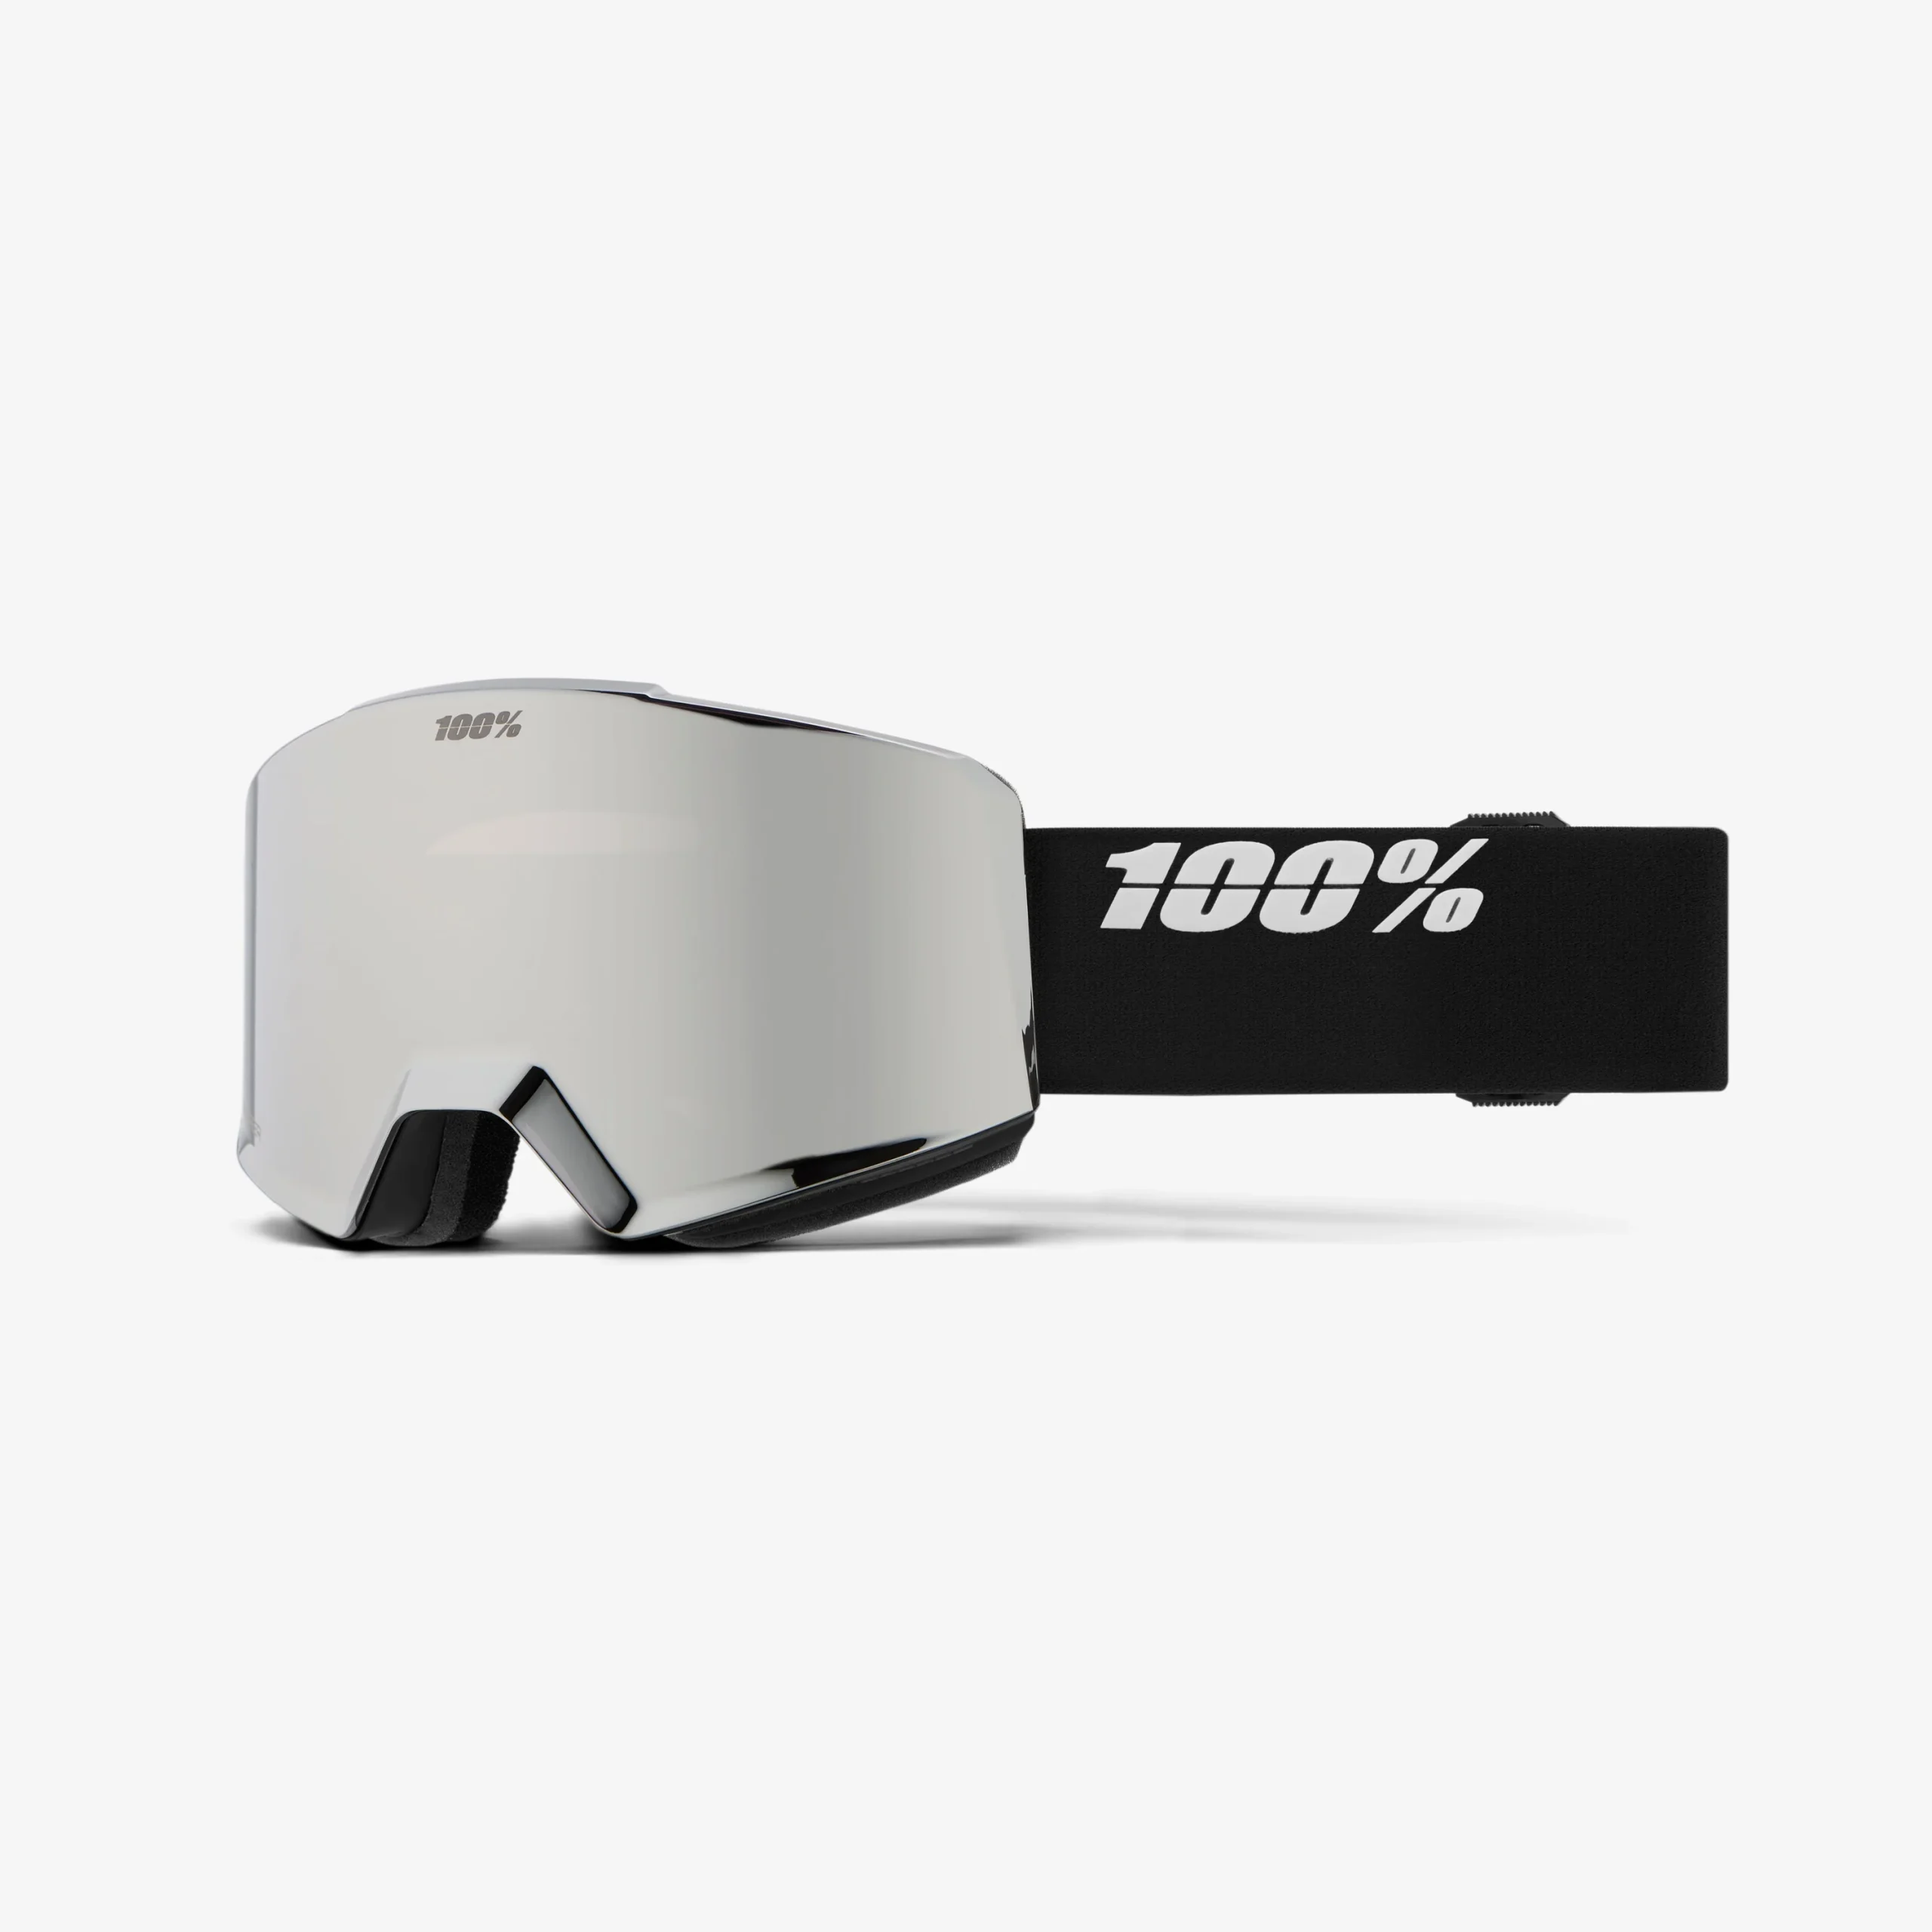 Kara Williard & Luke Koppa review the 100% Norg Goggle for BLISTER.